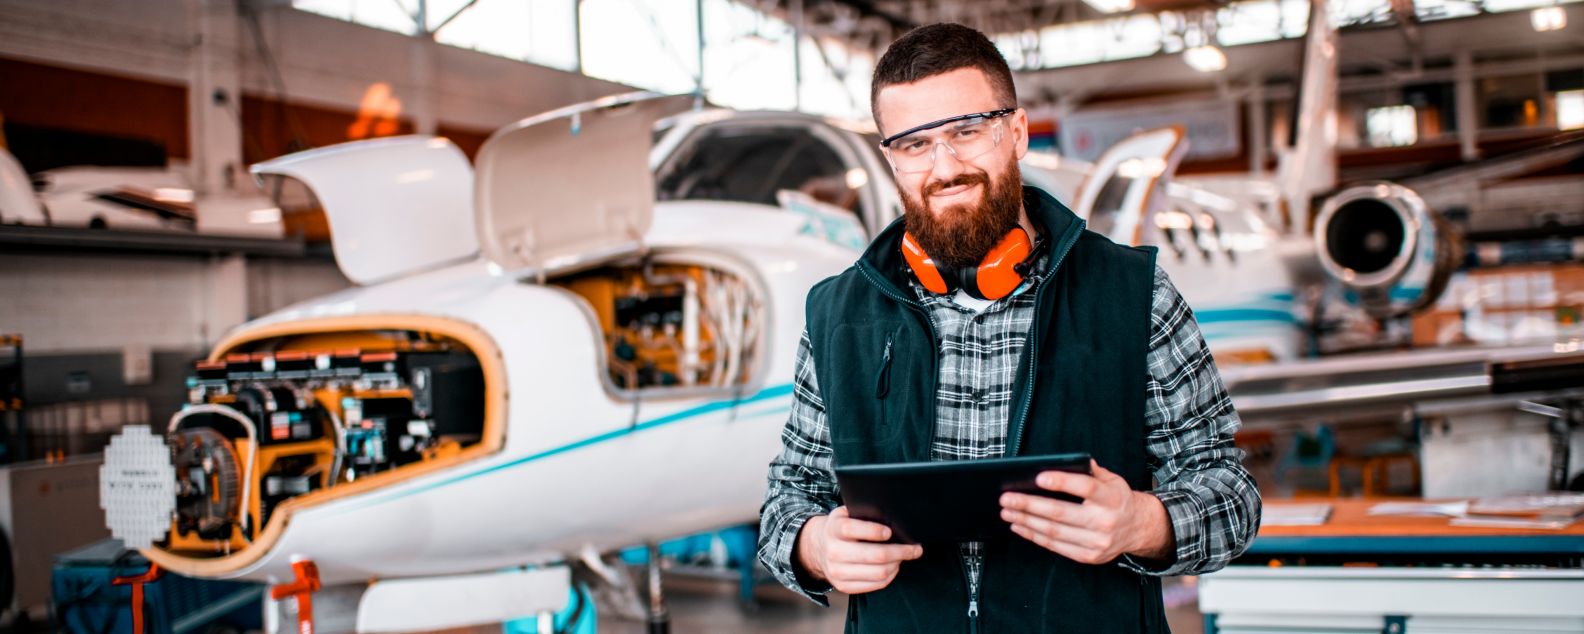 Flugzeugingenieur lächelt und blickt in die Kamera, während er ein digitales Tablet in der Hand hält und ein Flugzeug repariert und wartet